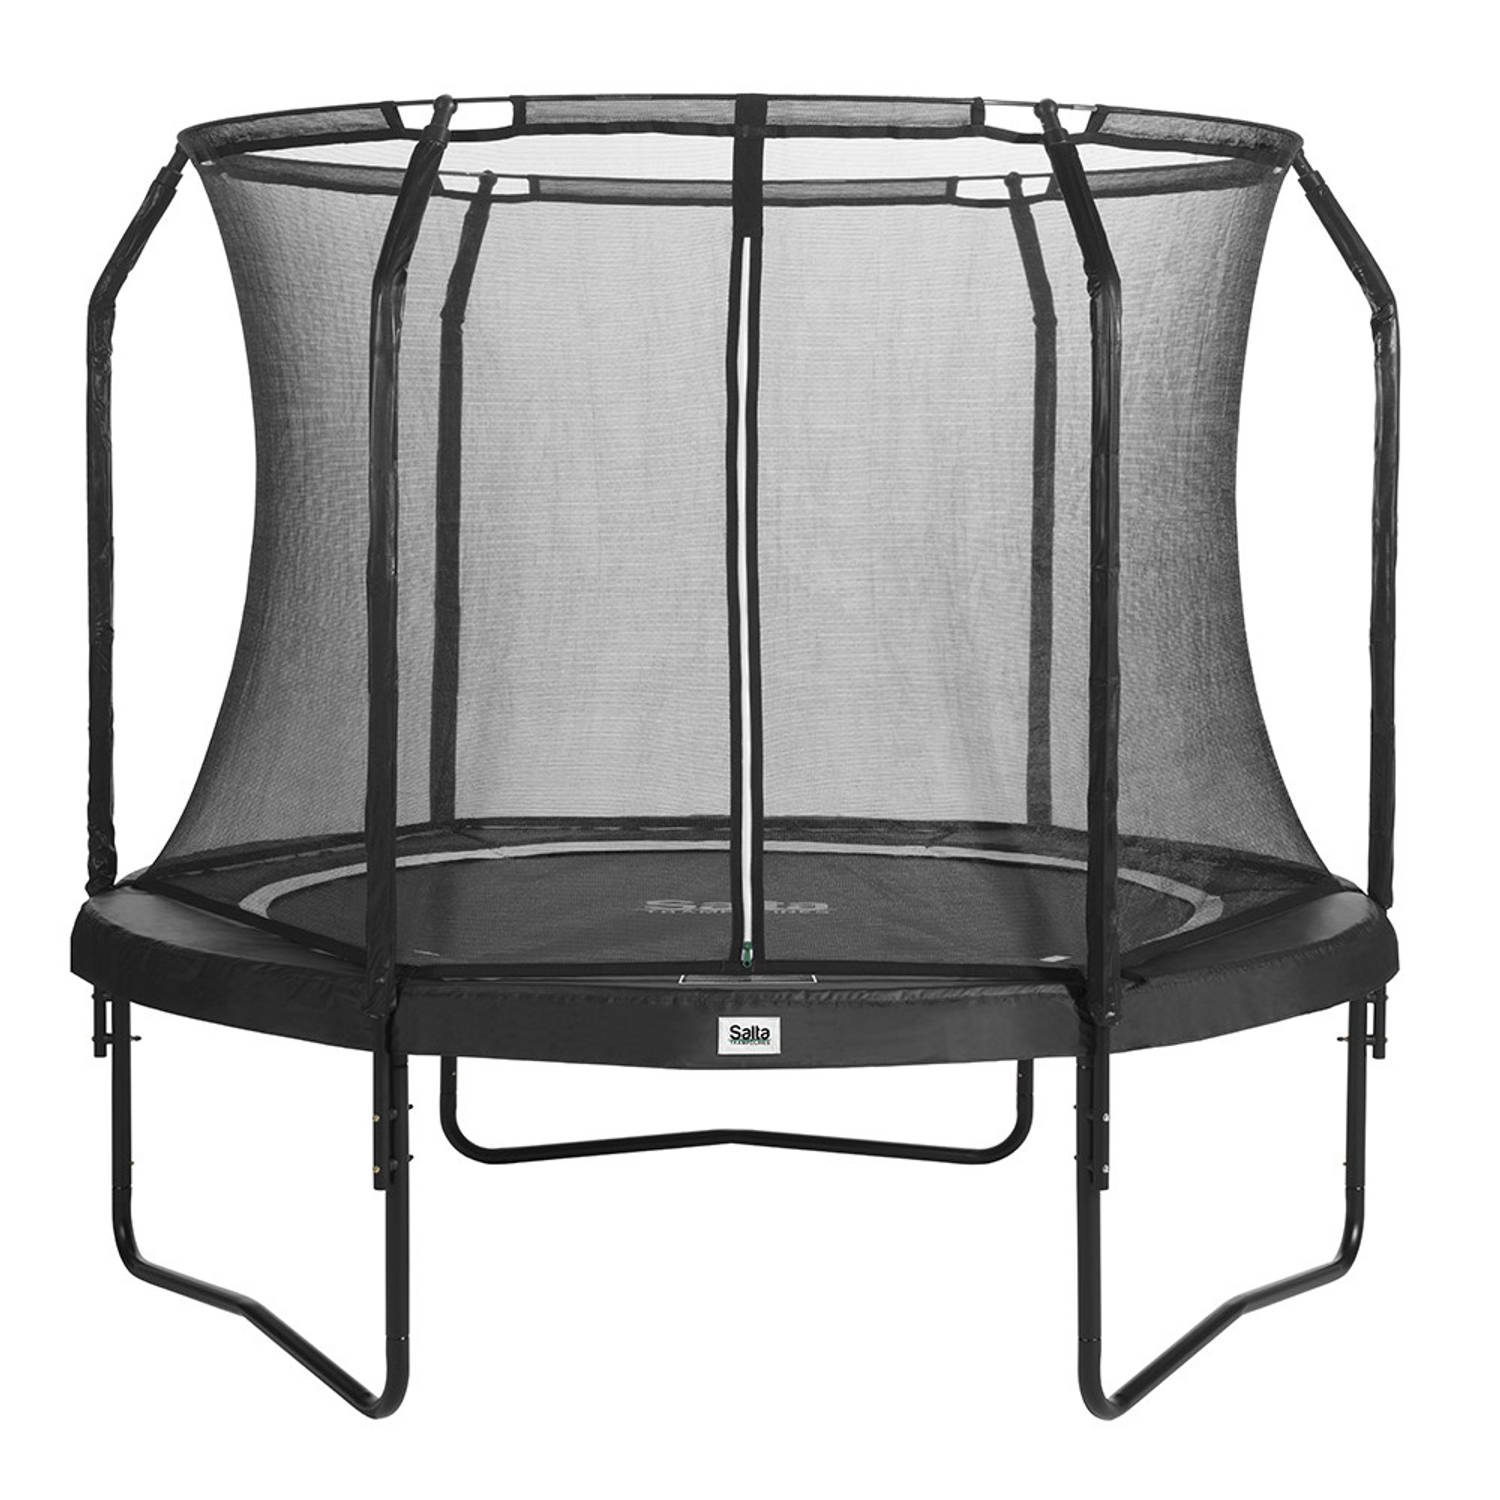 Salta Premium Black Edition Combo trampoline 251 cm